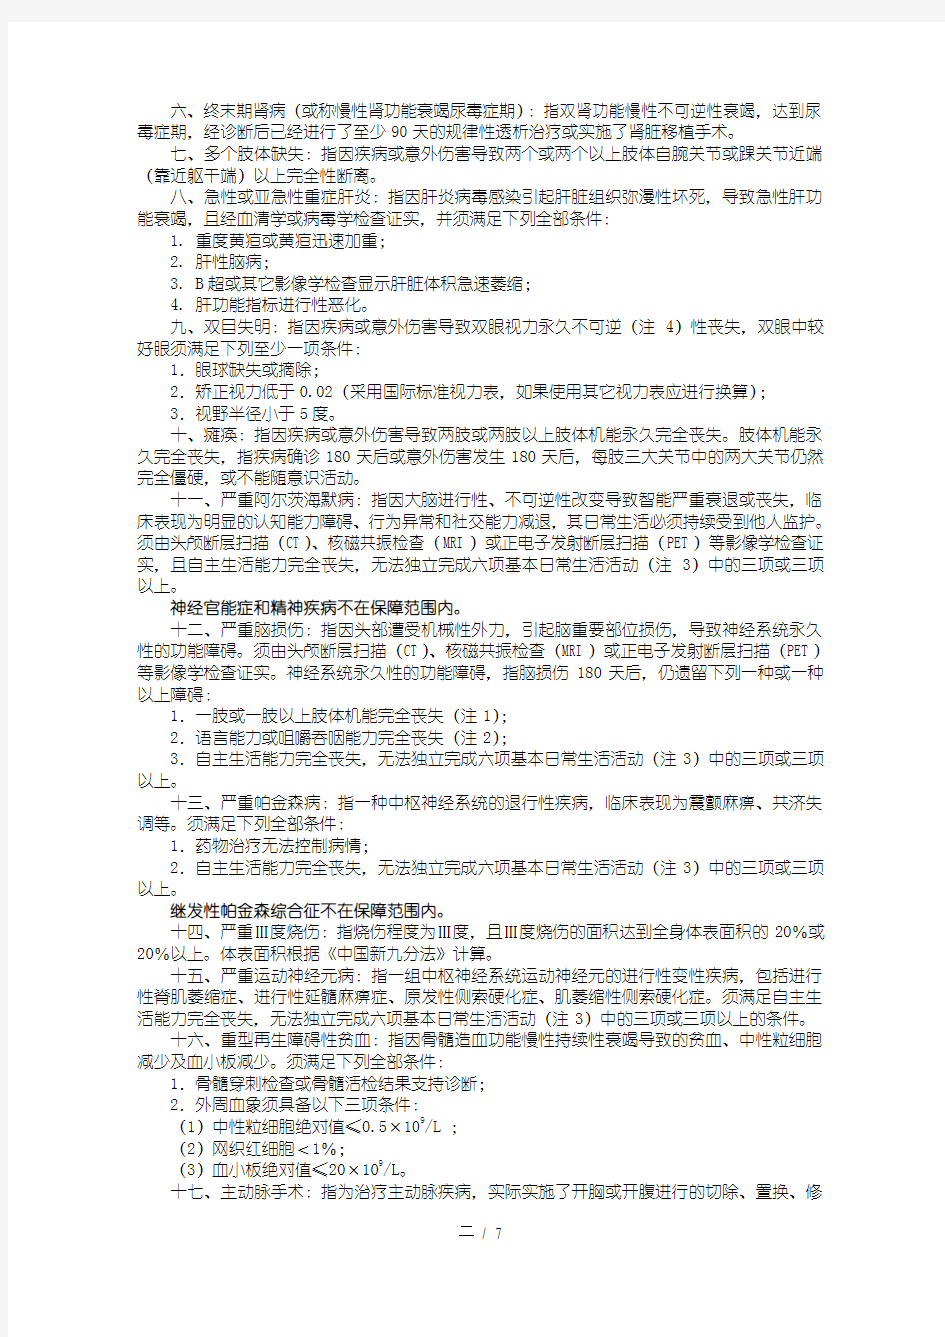 国寿康宁终身重大疾病保险利益条款-2003.